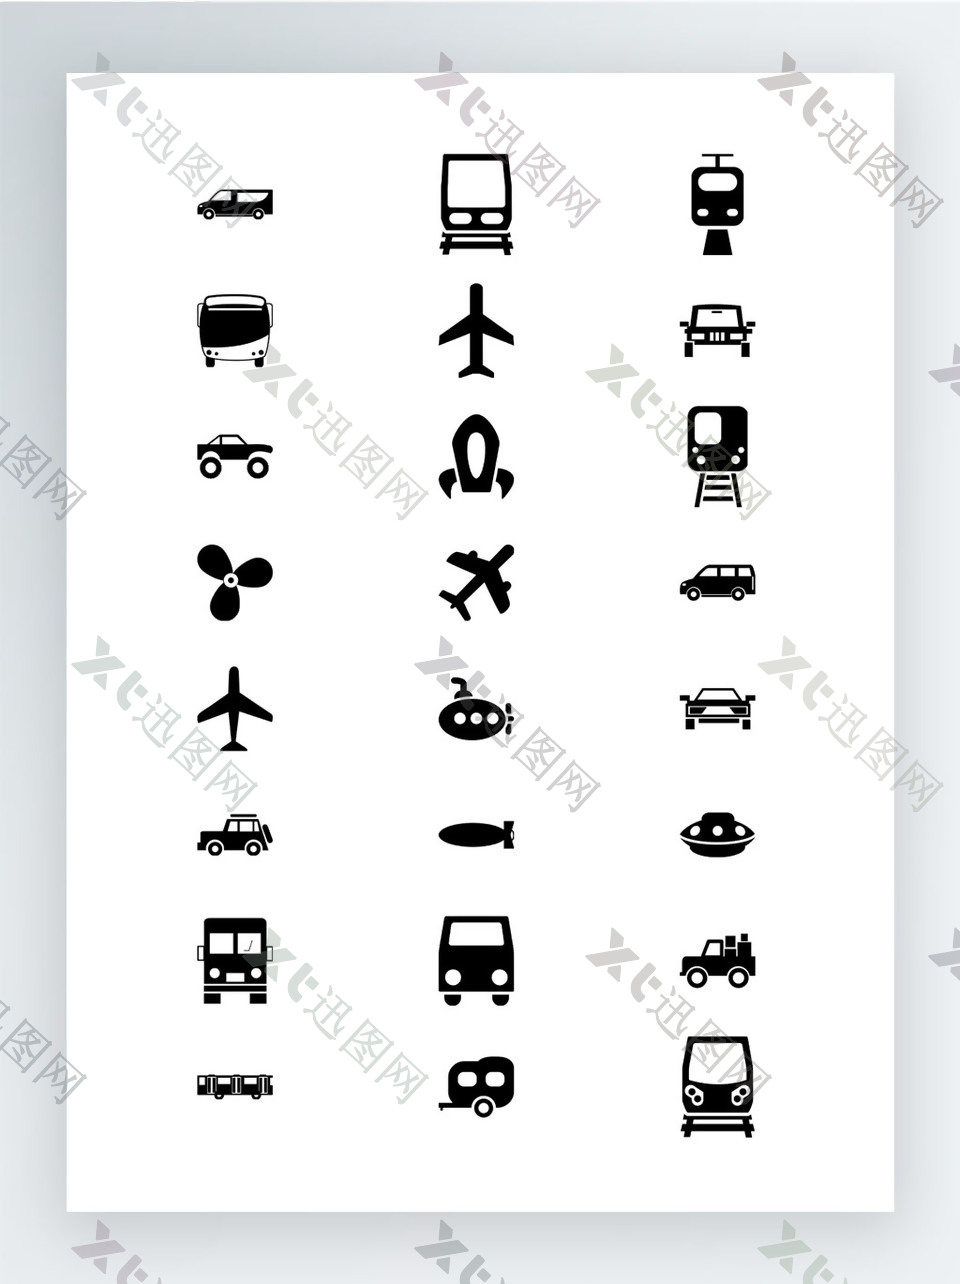 交通运输工具图标集